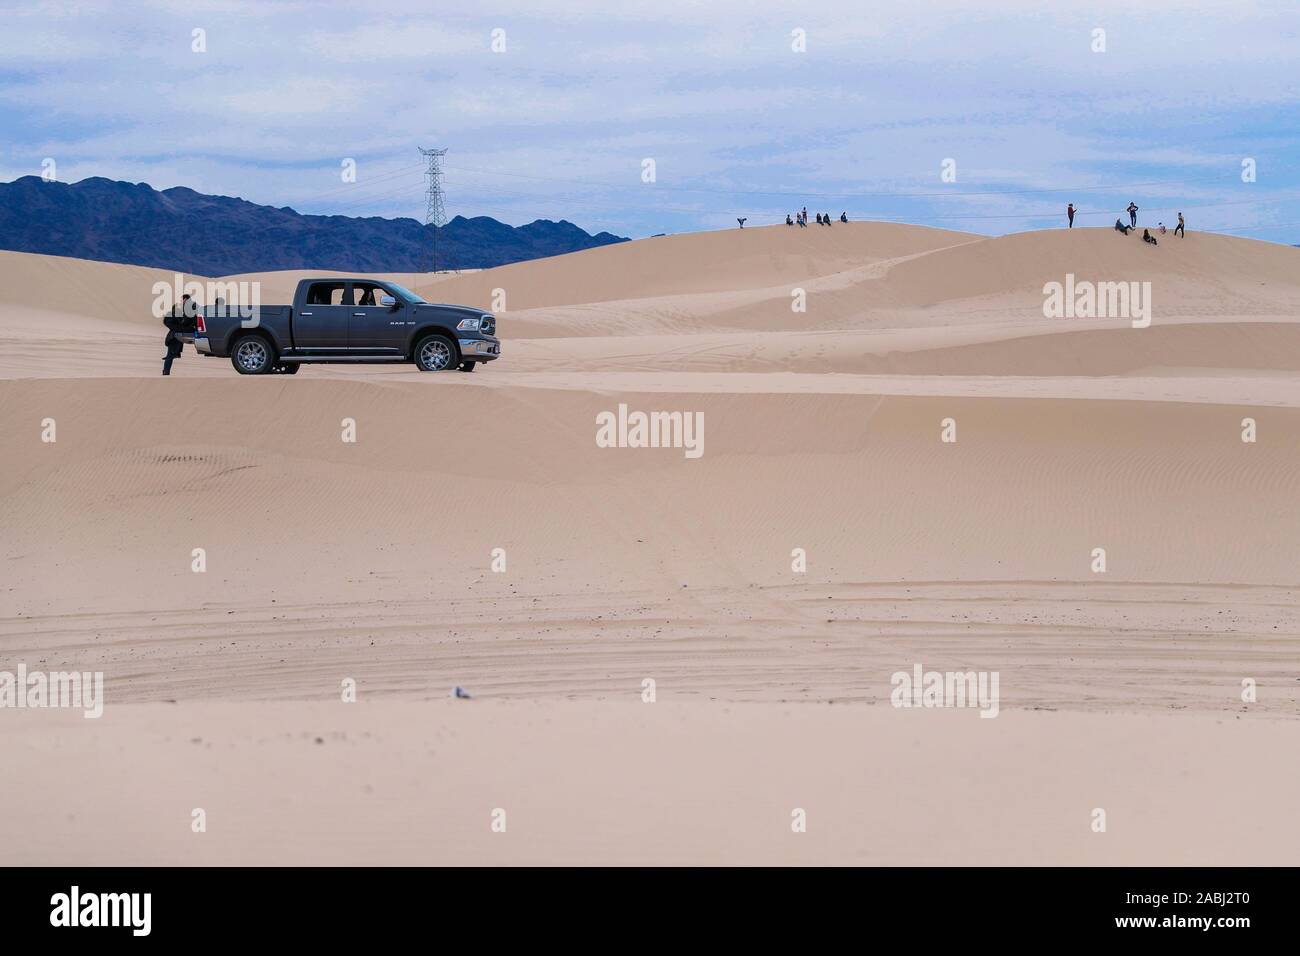 Une camionnette, Doge camions Ram dans les dunes de sable du désert, l'Samalayuca Chihuahua au Mexique. 52 km au sud de Ciudad Juárez dans le milieu de la deser Banque D'Images